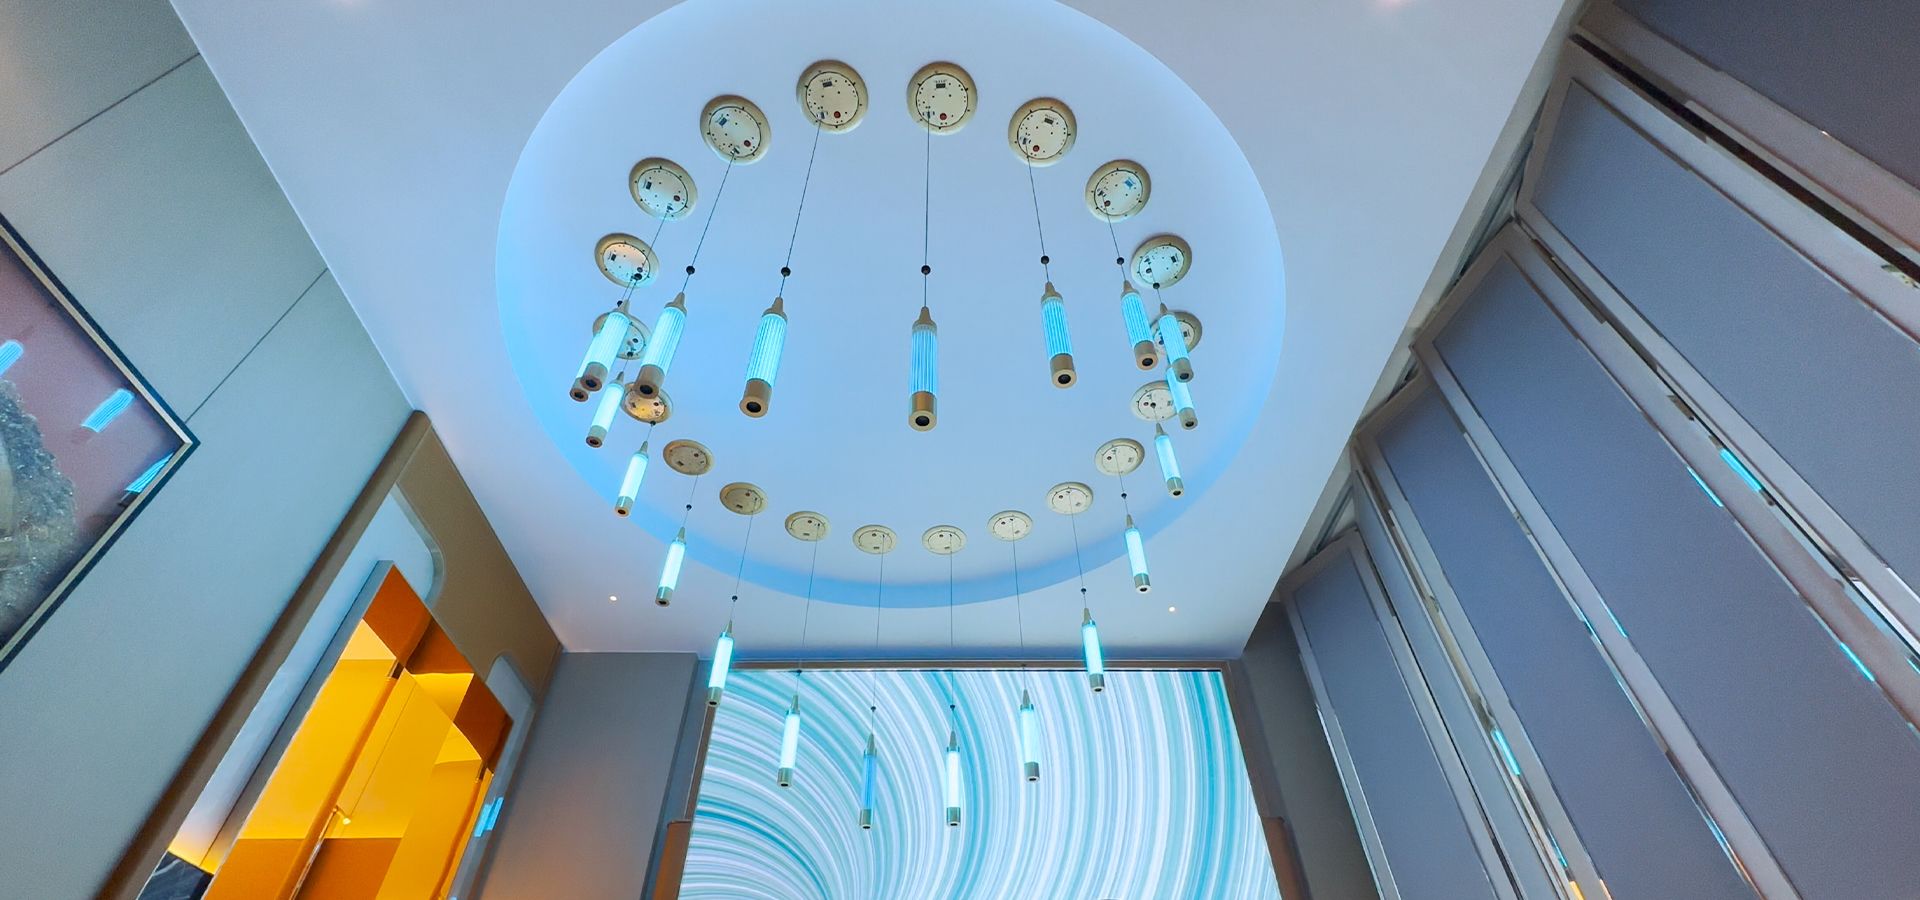 Gumagawa ang EMIC ng grand art space at reception room na may mga kinetic lights